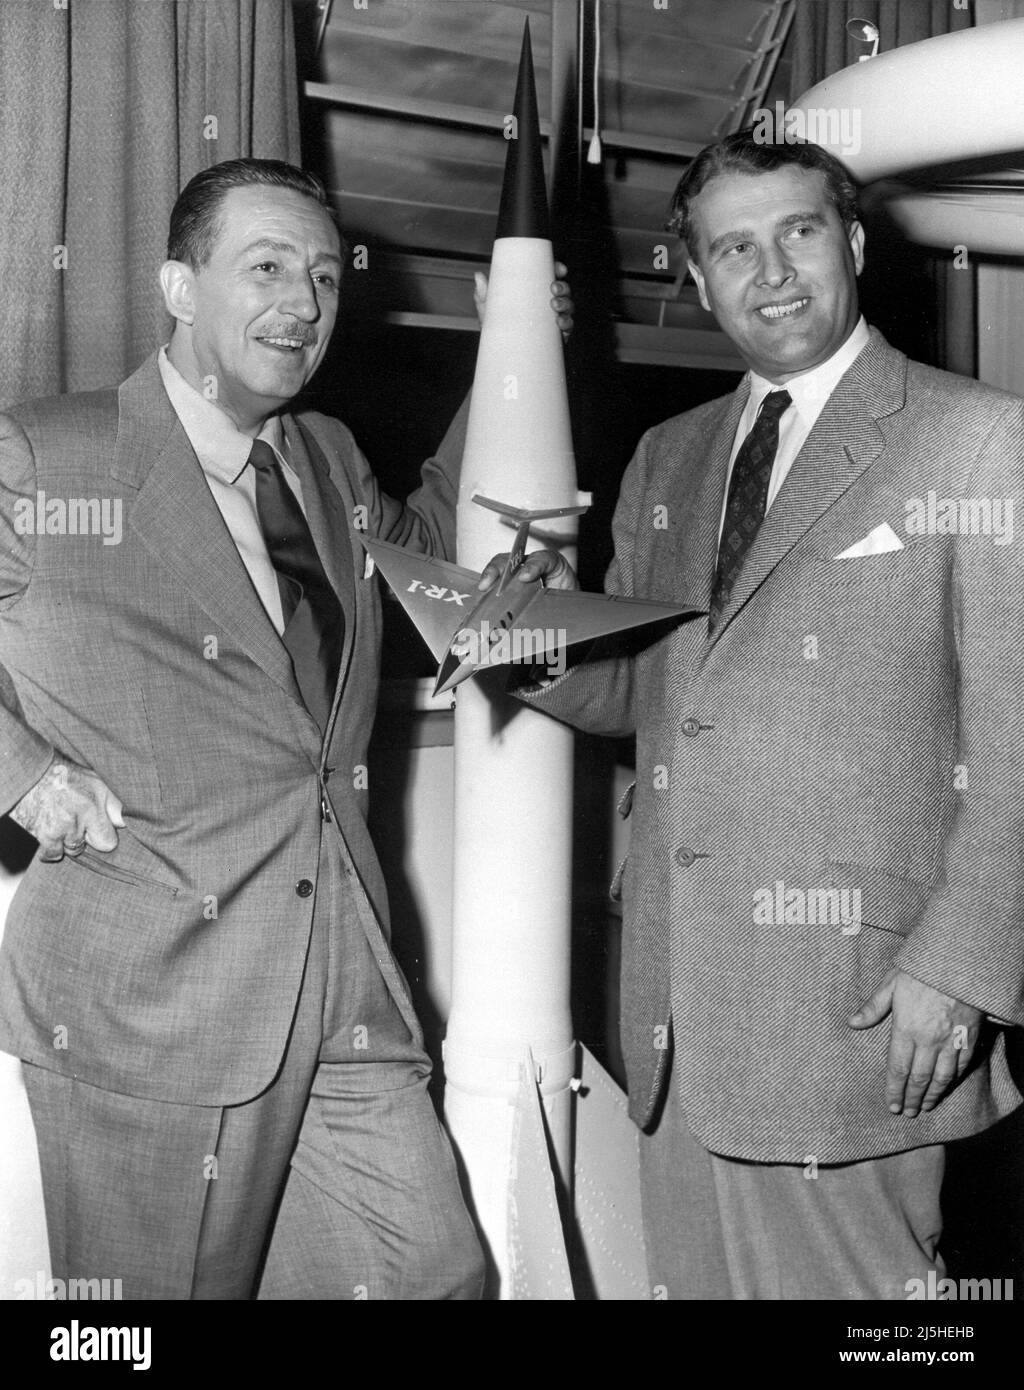 Walt Disney et Wernher von Braun, vus ici en 1954 avec un modèle de son navire à passagers, ont collaboré à une série de trois films éducatifs; Cela suggère entre autres que Braun lui-même avait assez de temps libre pour populariser le cosmonautics, car la priorité dans la conception d'une fusée spatiale a été donnée à d'autres personnes Banque D'Images